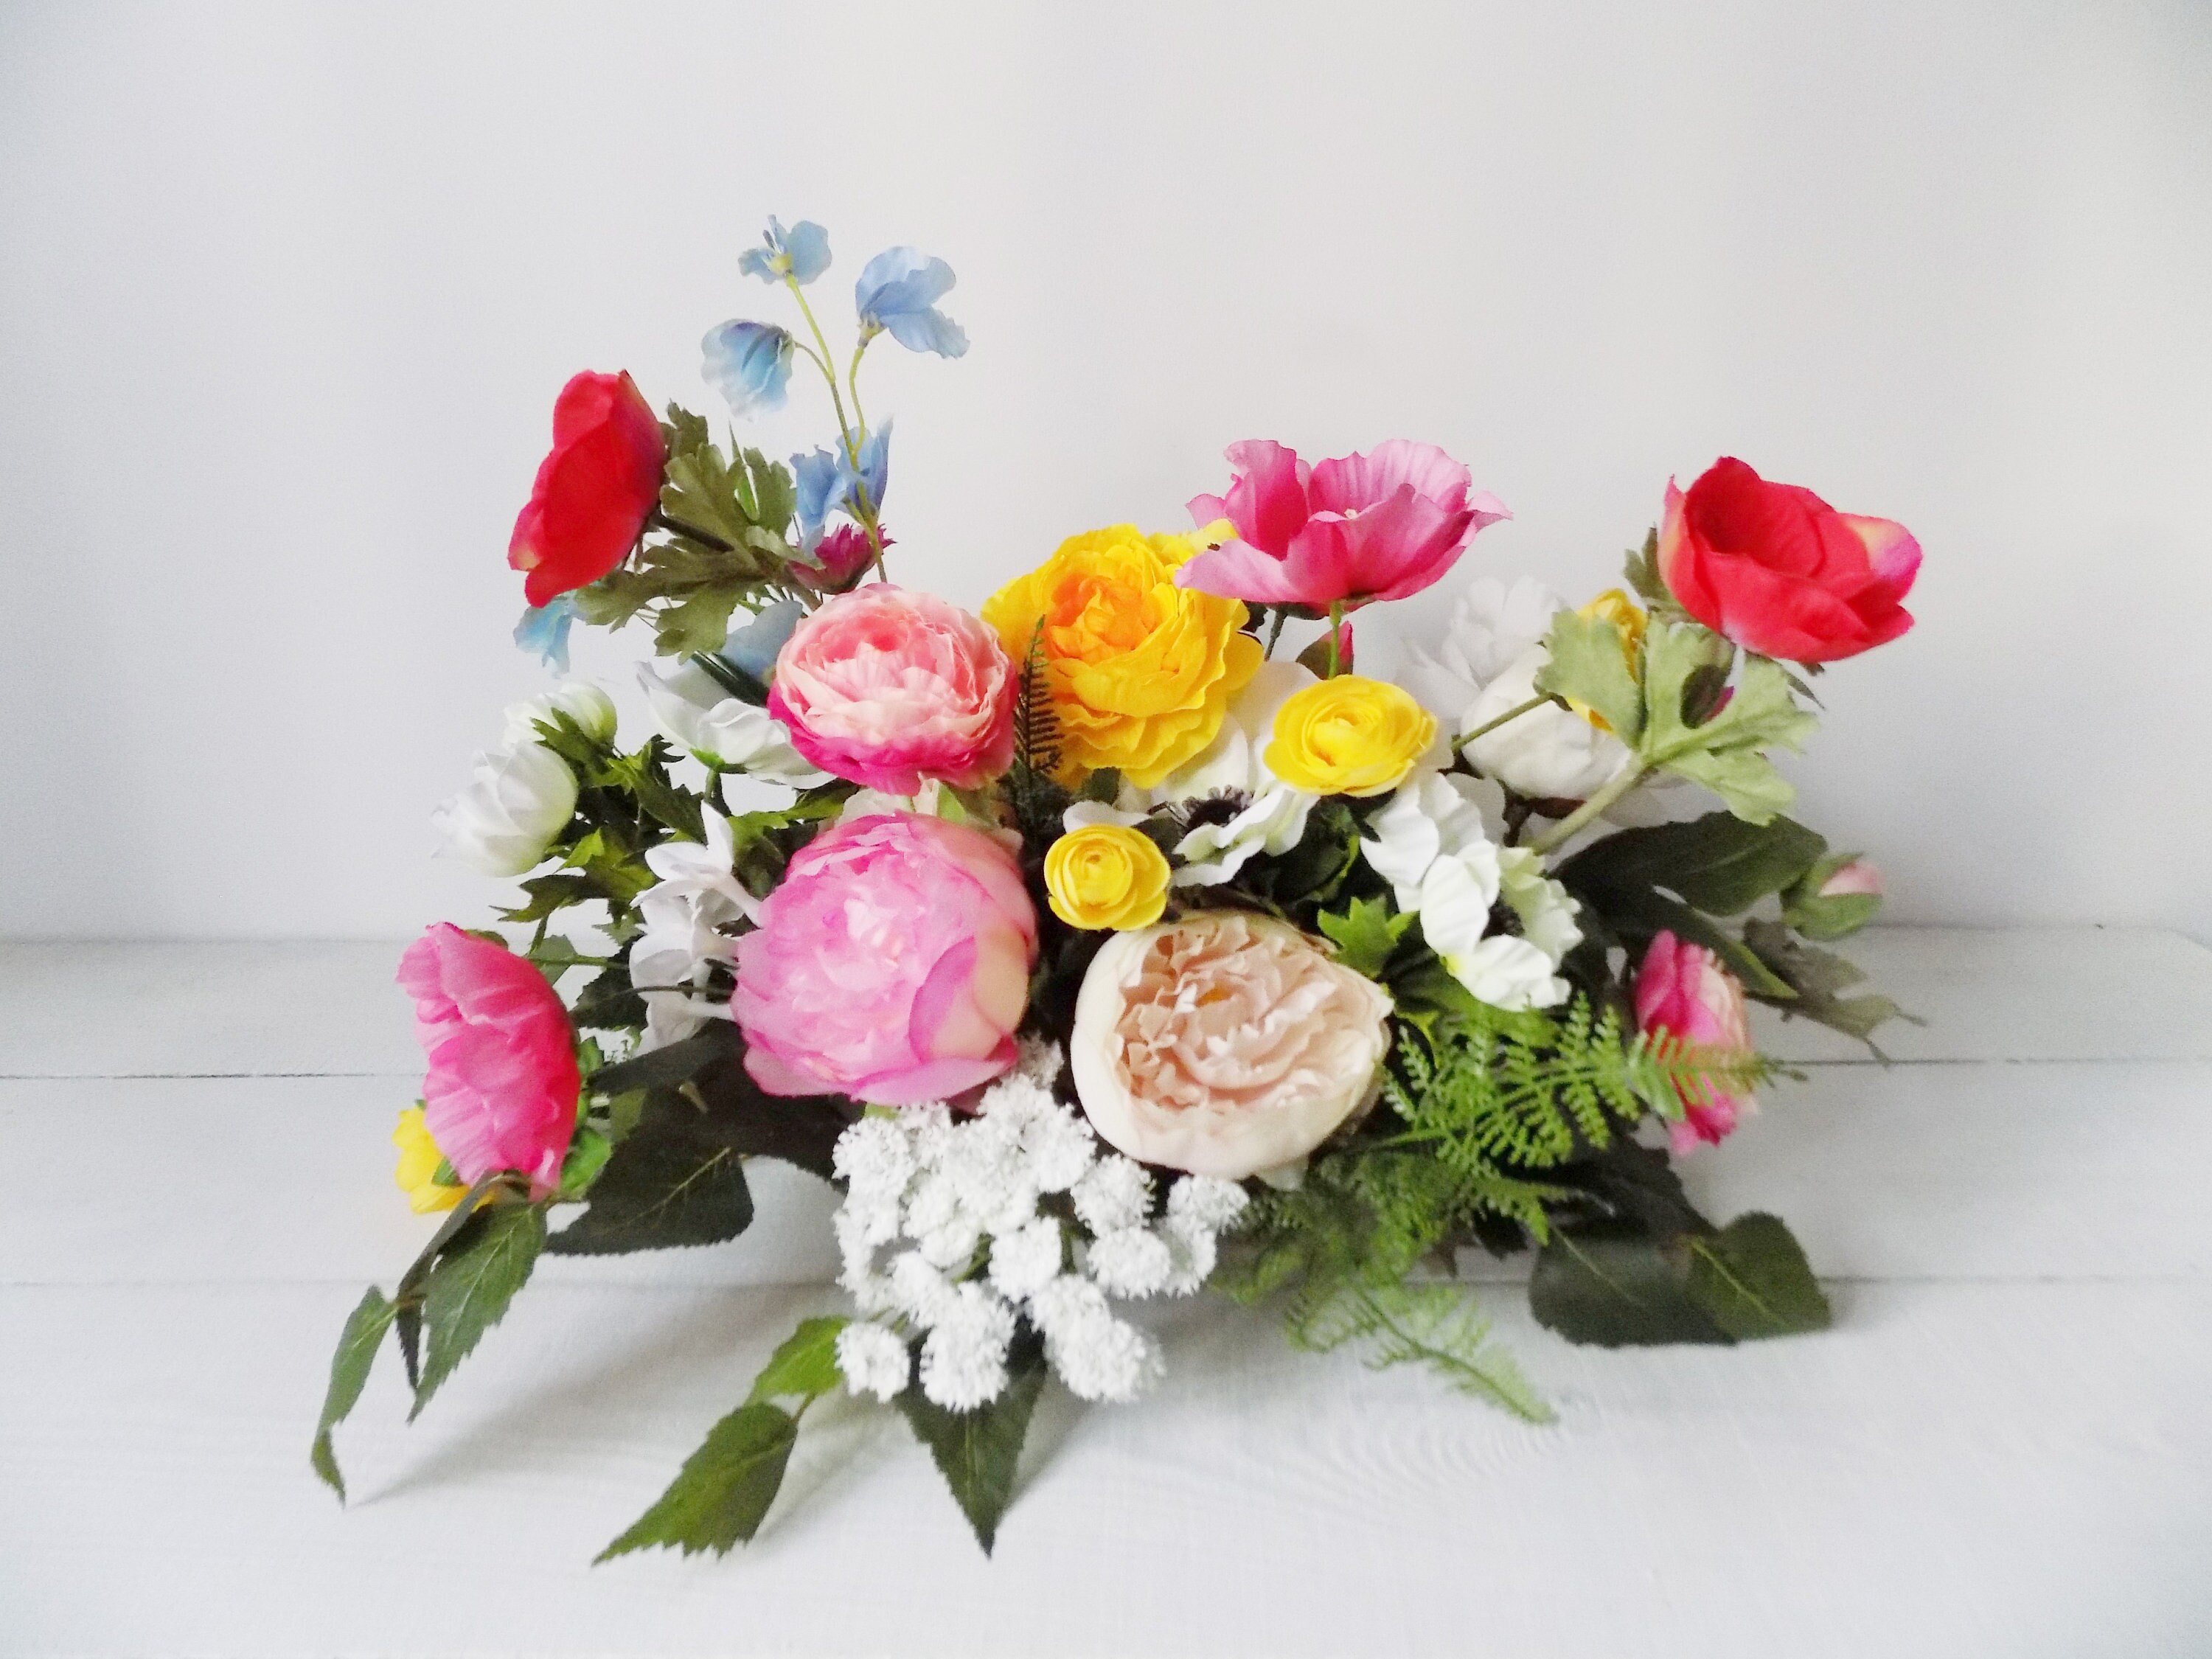 Flower Arrangement Wedding Centerpiece Reception Centerpiece - Etsy